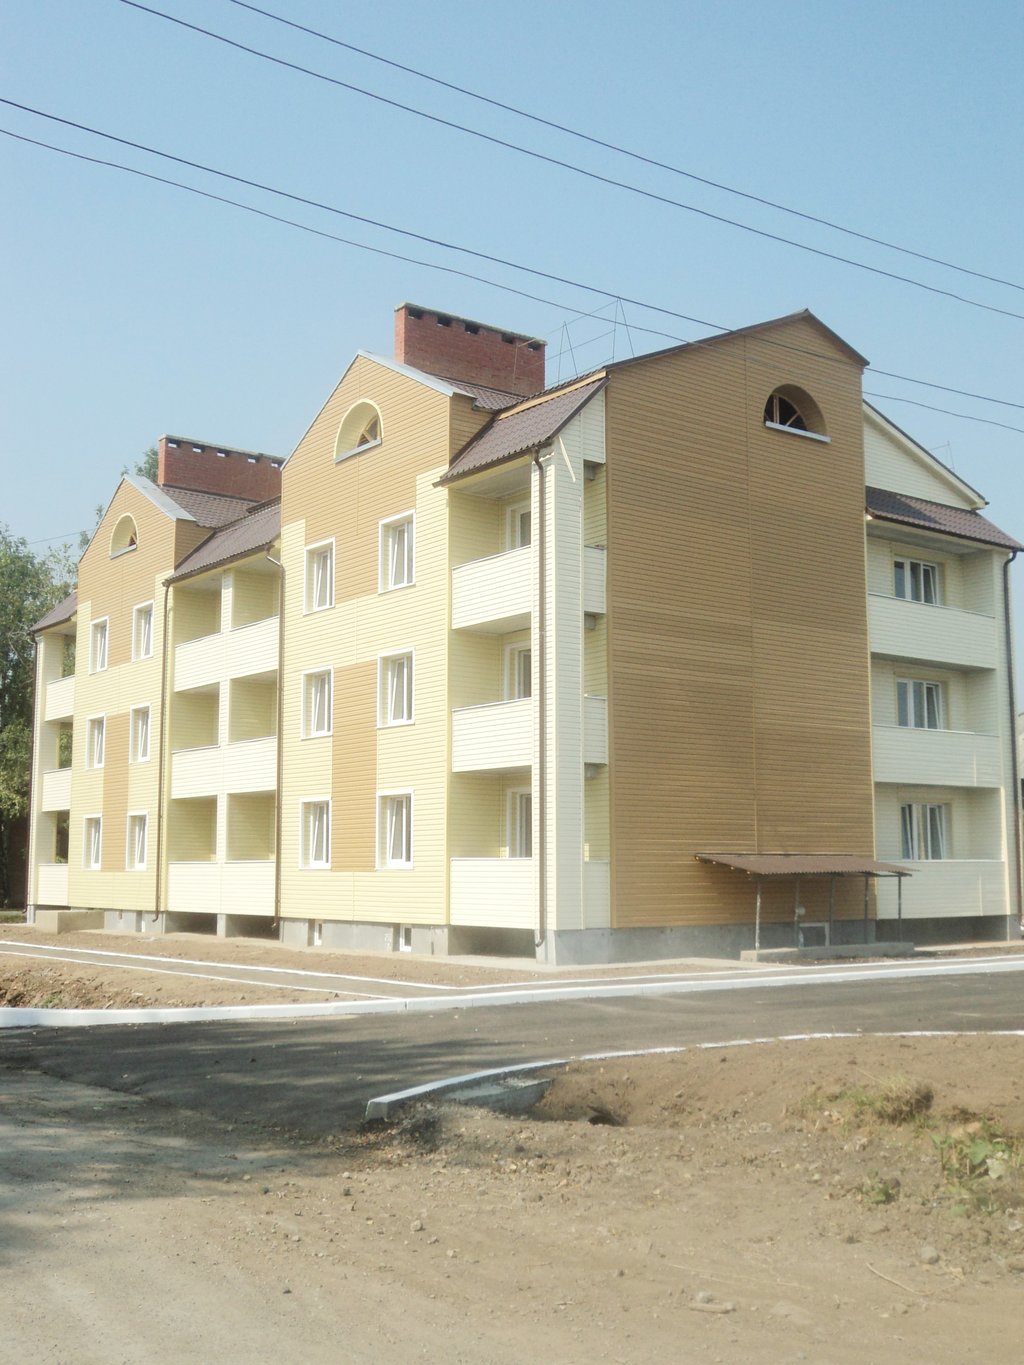 Нынешним летом этот дом в Карпинске заселили переселенцы из аварийного жилья. Фото автора.